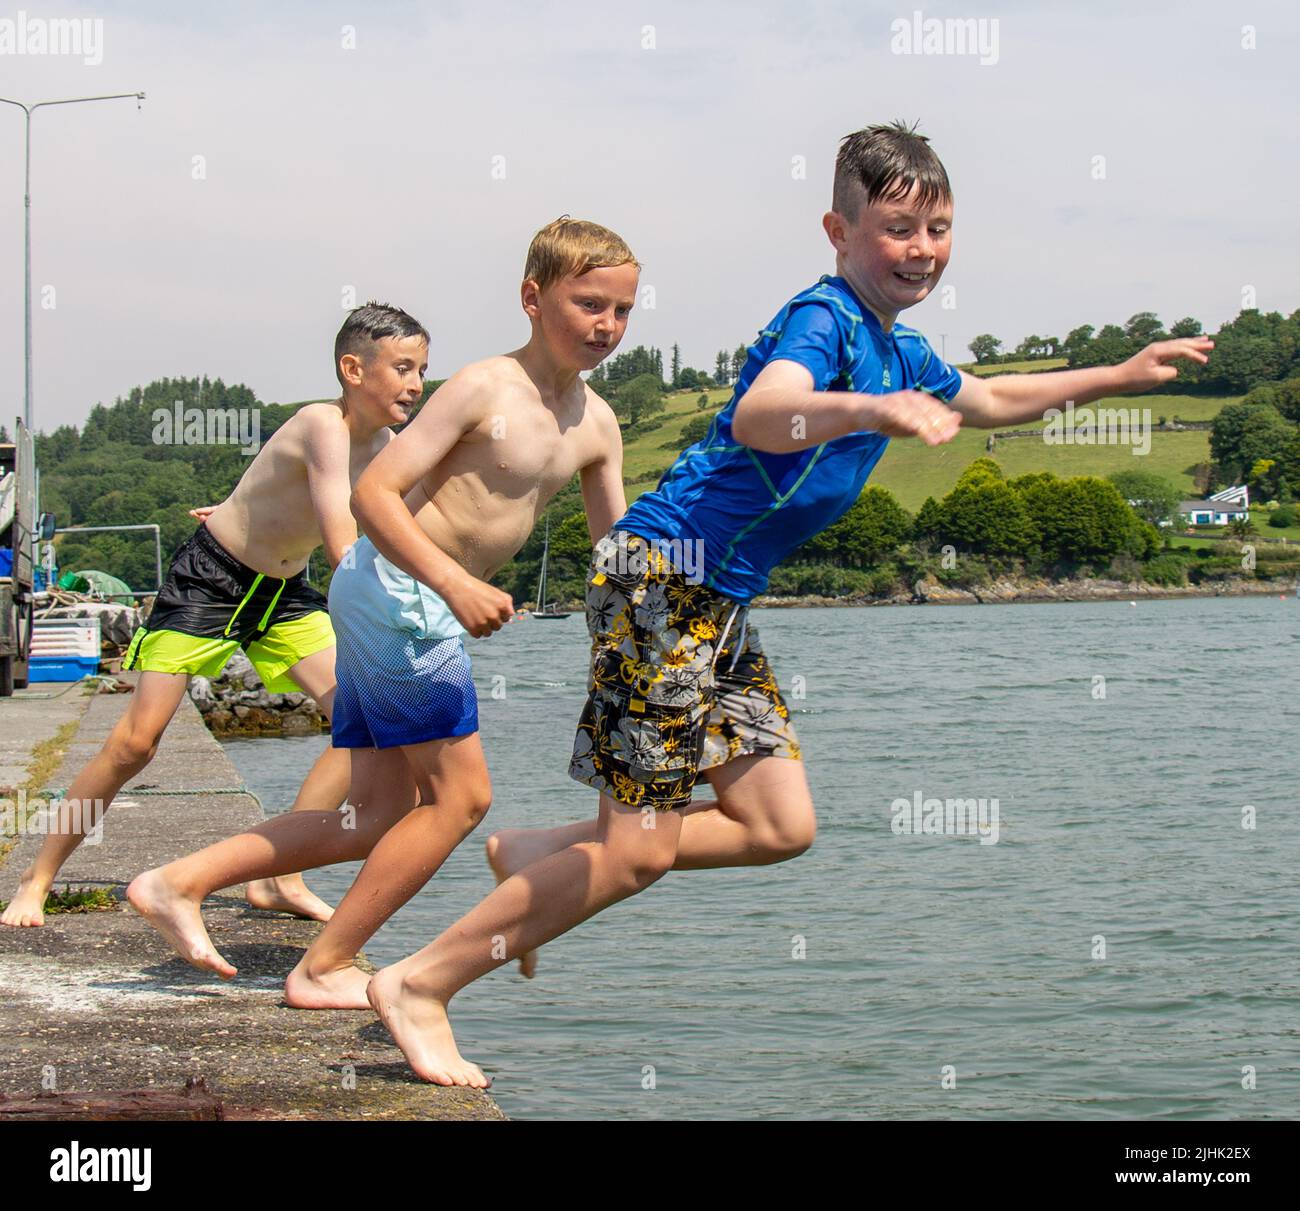 Niños en vacaciones de verano o vacaciones saltando al mar. Foto de stock